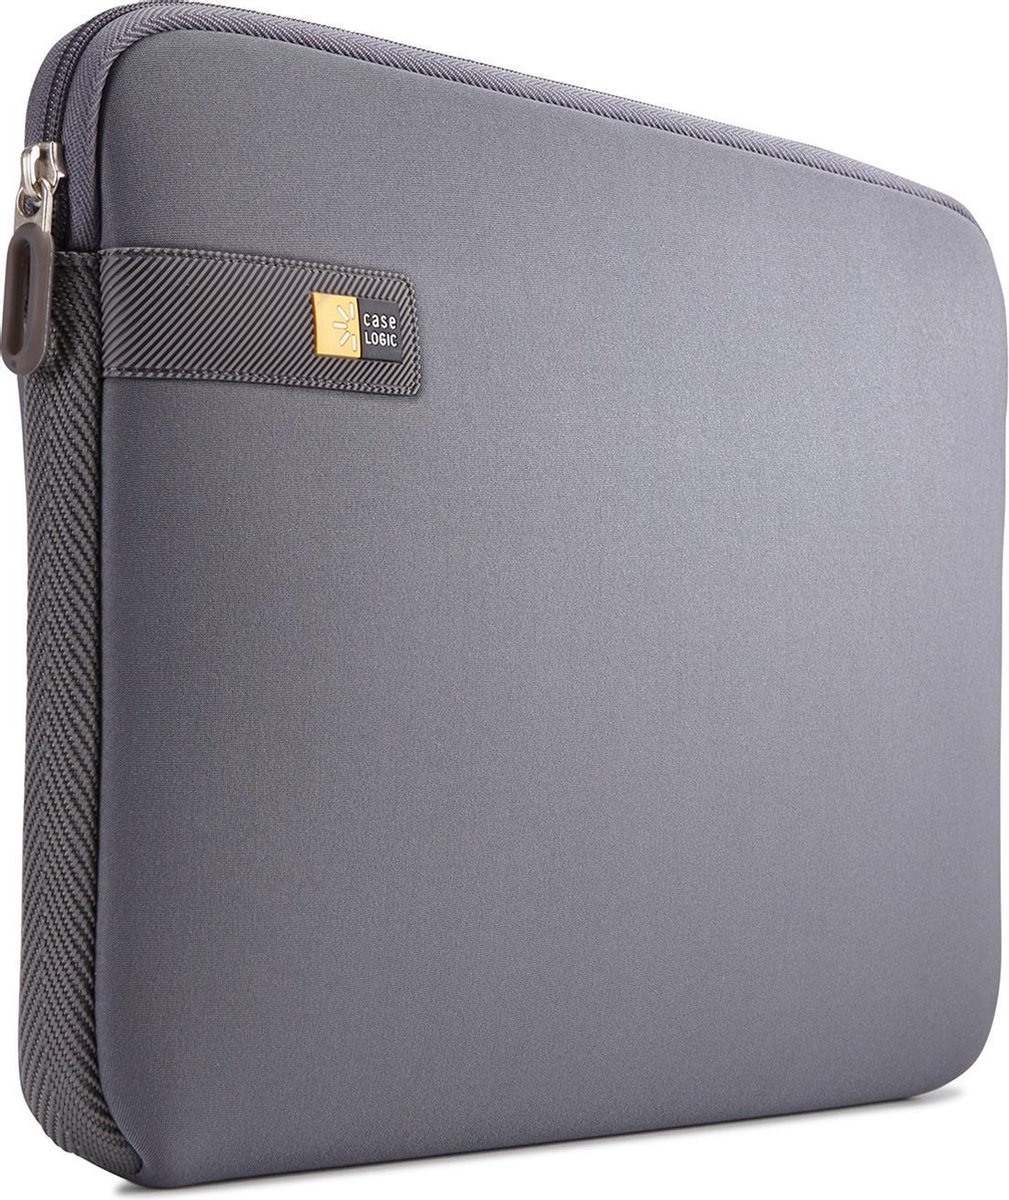 Case Logic LAPS113 - Laptophoes / Sleeve - 13 inch - Grijs - Case Logic